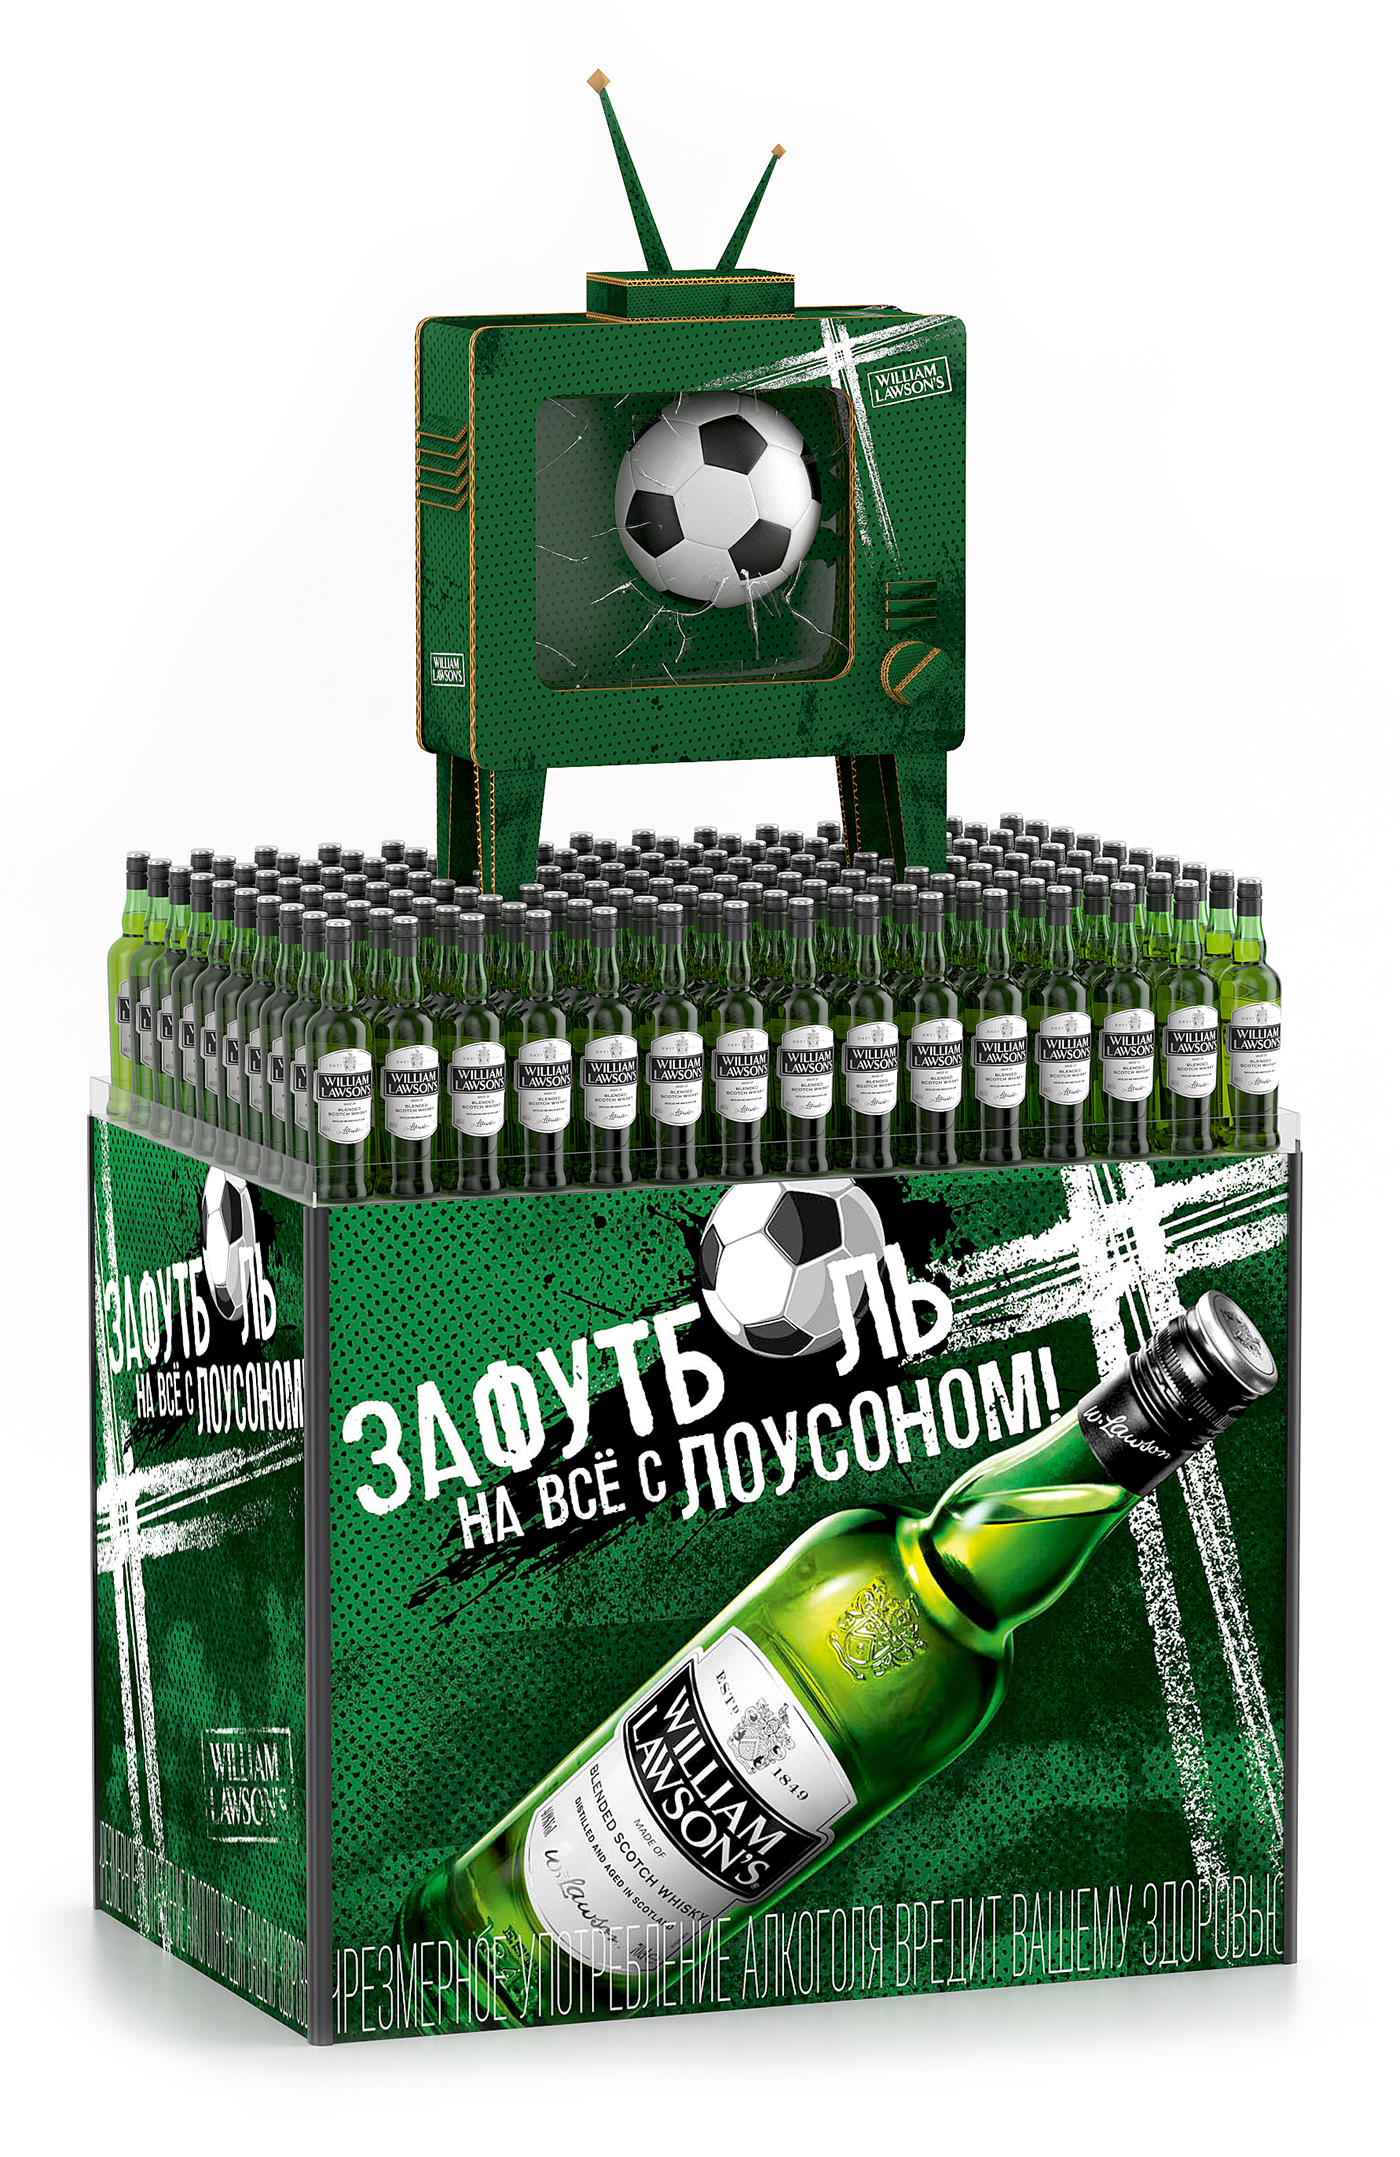 football POSM design графический дизайн айдентика идея рекламной кампании нестандартные решения ритейл дизайн Чемпионат мира по футболу